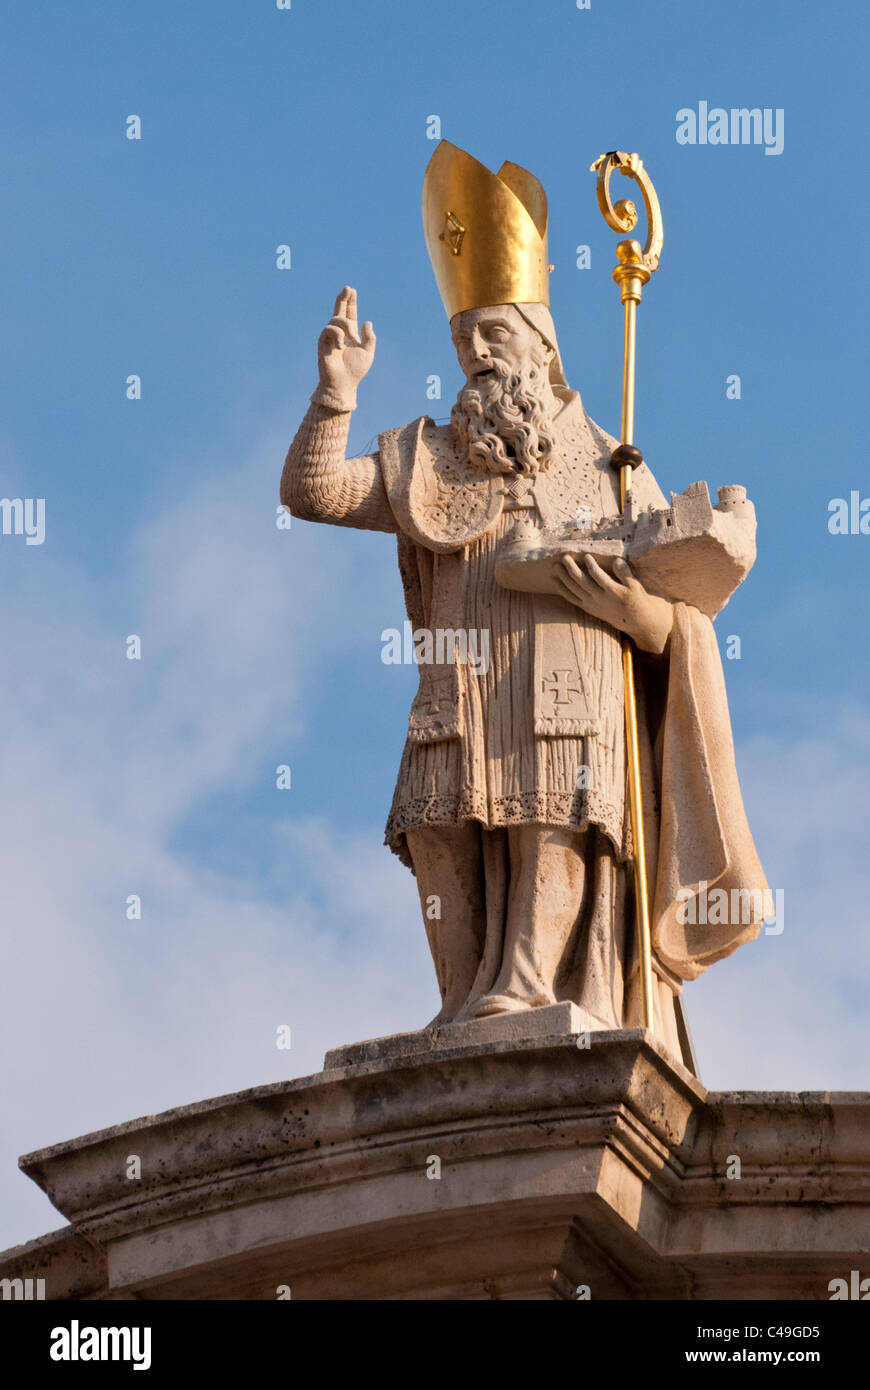 La statua di San Biagio sul tetto della chiesa di San Biagio è situato nella Città Vecchia, Dubrovnik, Croazia. Foto Stock